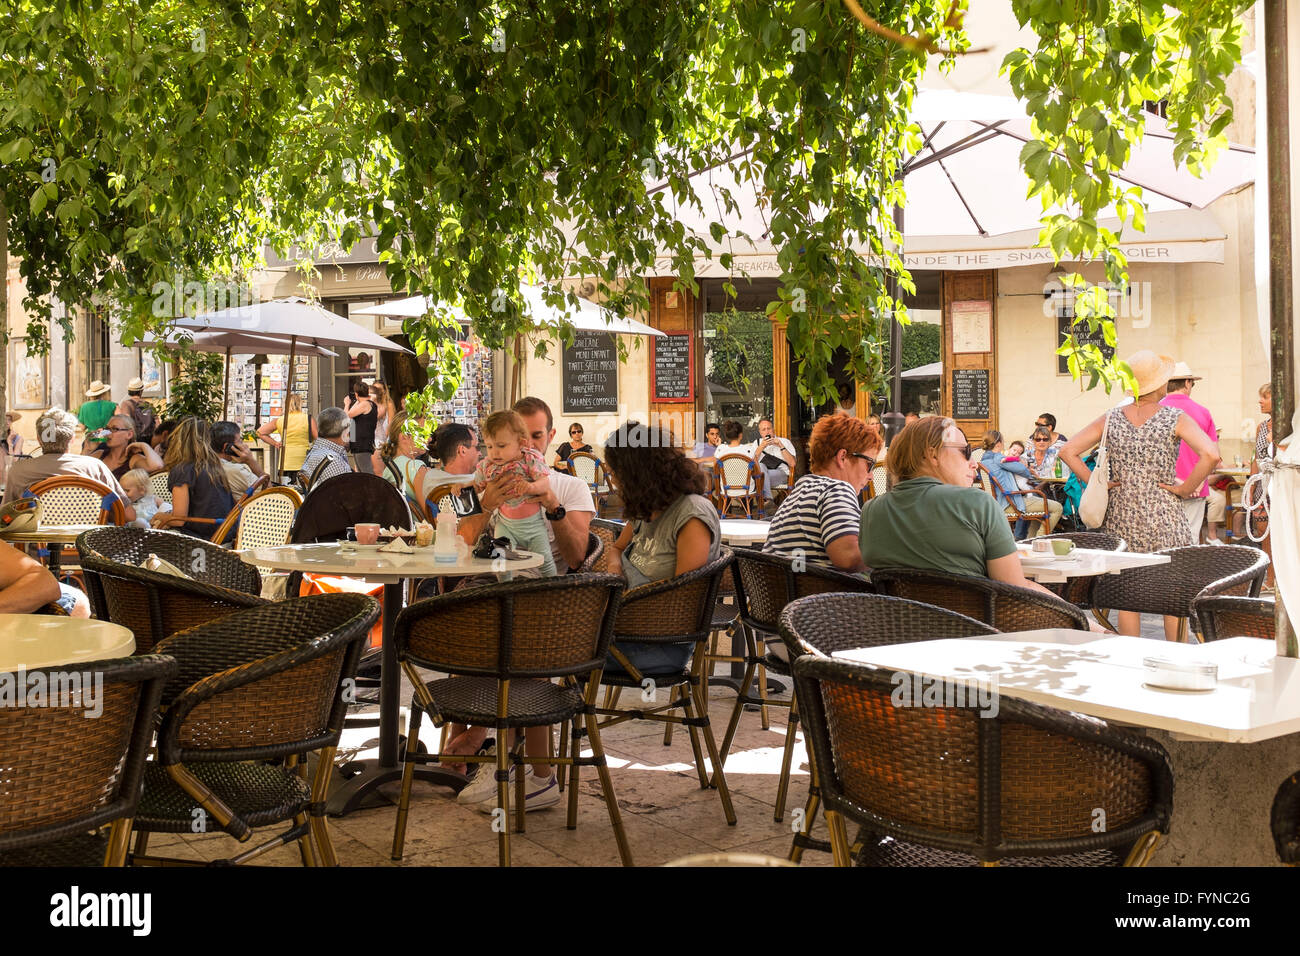 Les vacanciers se détendre dans un café de la chaussée, Lourmarin, Luberon, Vaucluse, Provence-Alpes-Côte d'Azur, France Banque D'Images